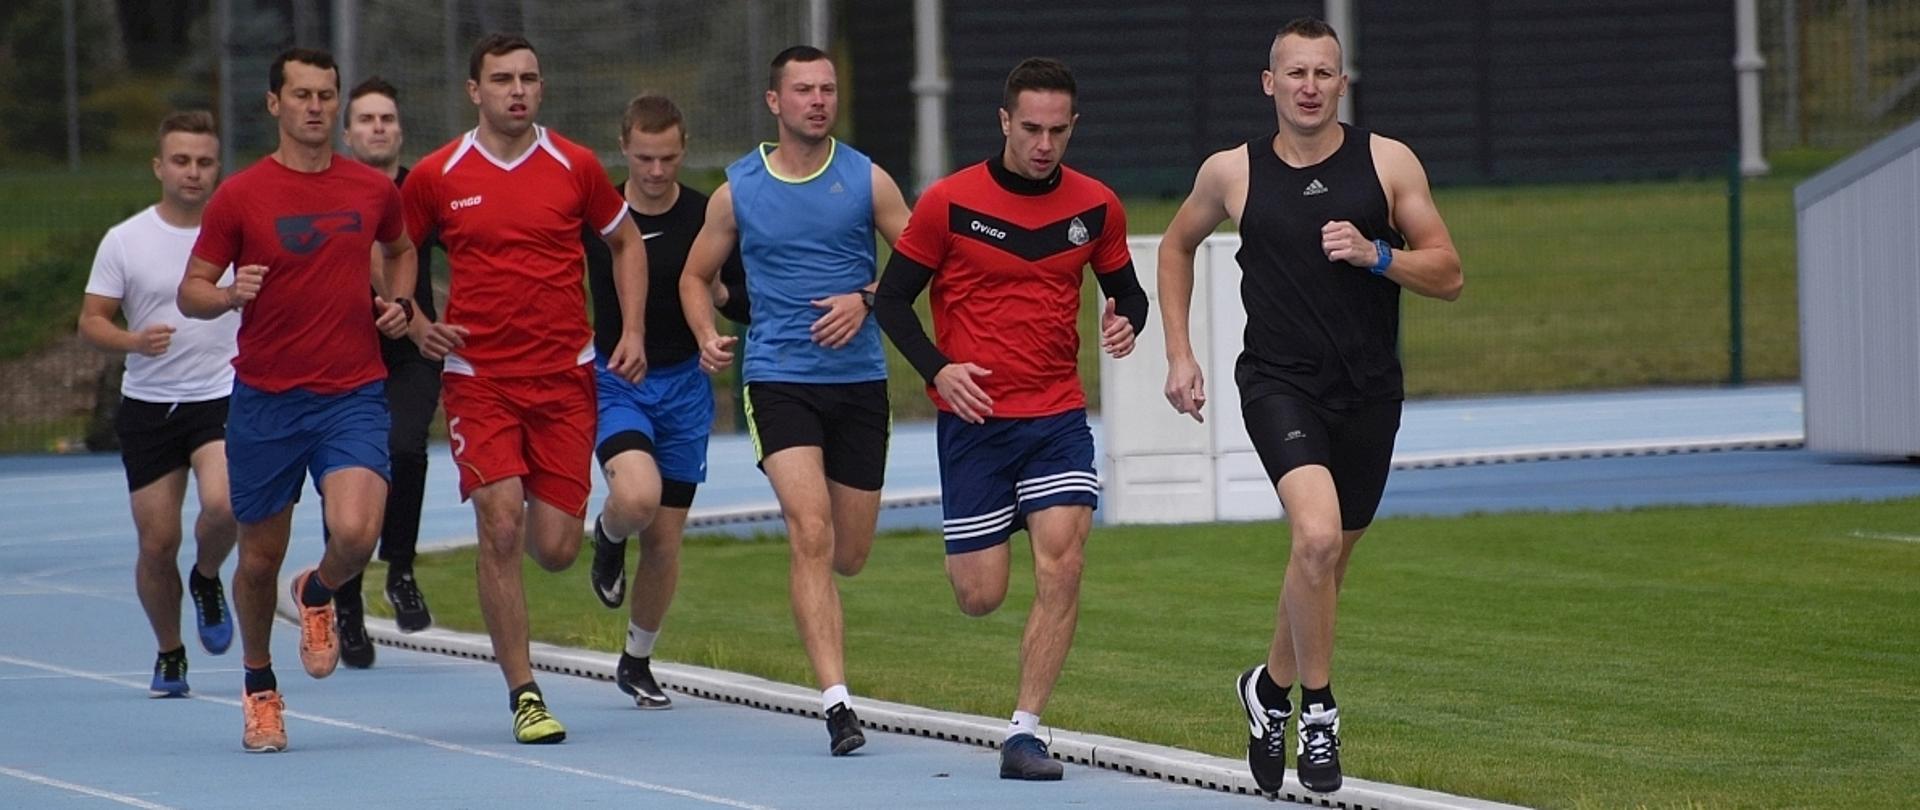 na zdjęciu ośmiu biegaczy w trakcie biegu po niebieskiej bieżni